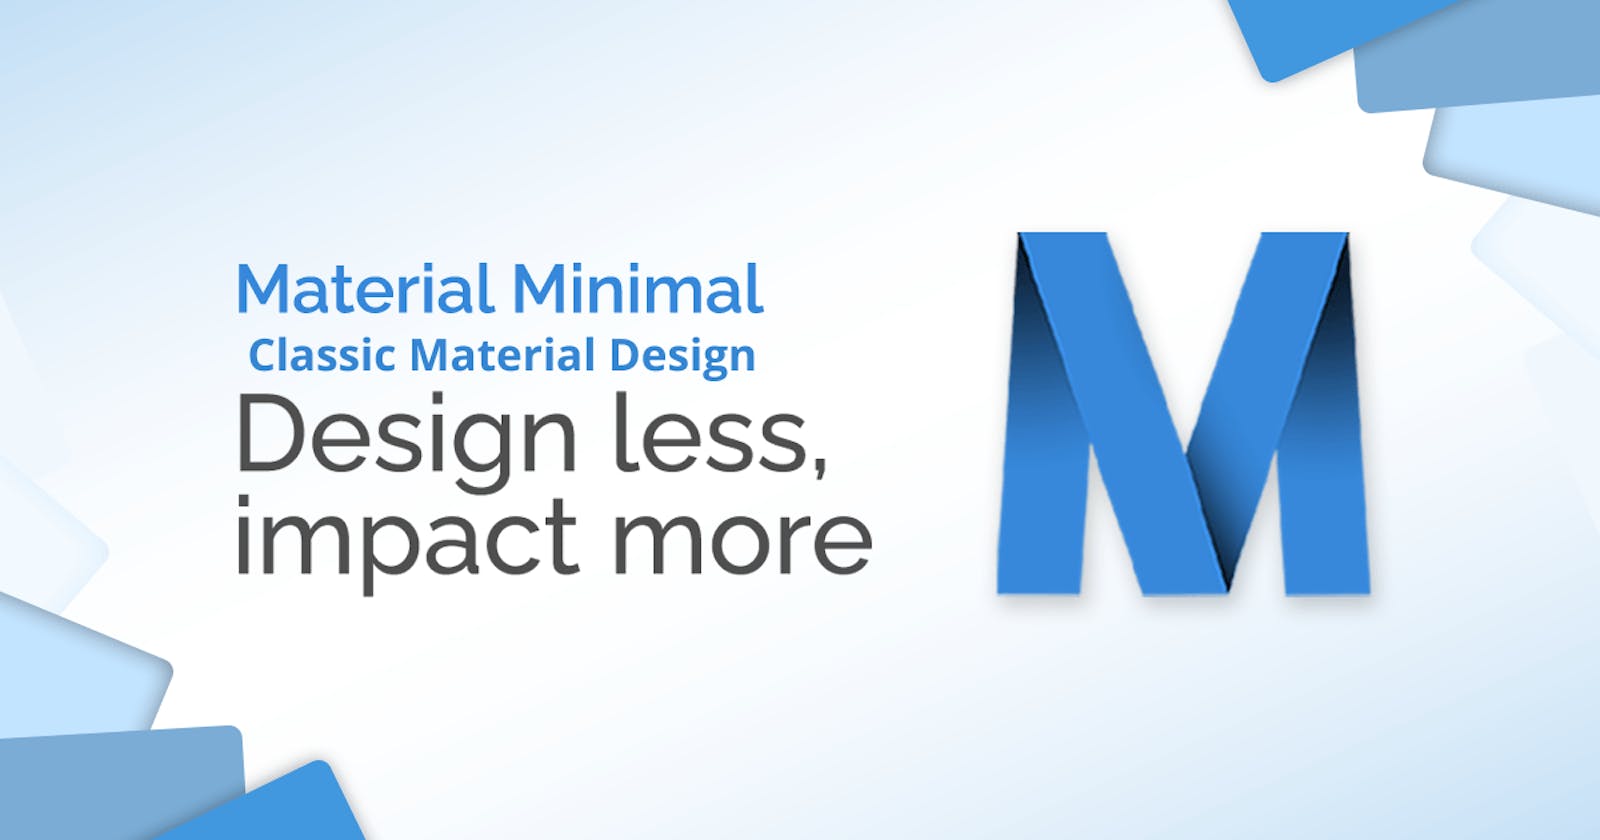 WebDesign Tutorial - Classic Material Design